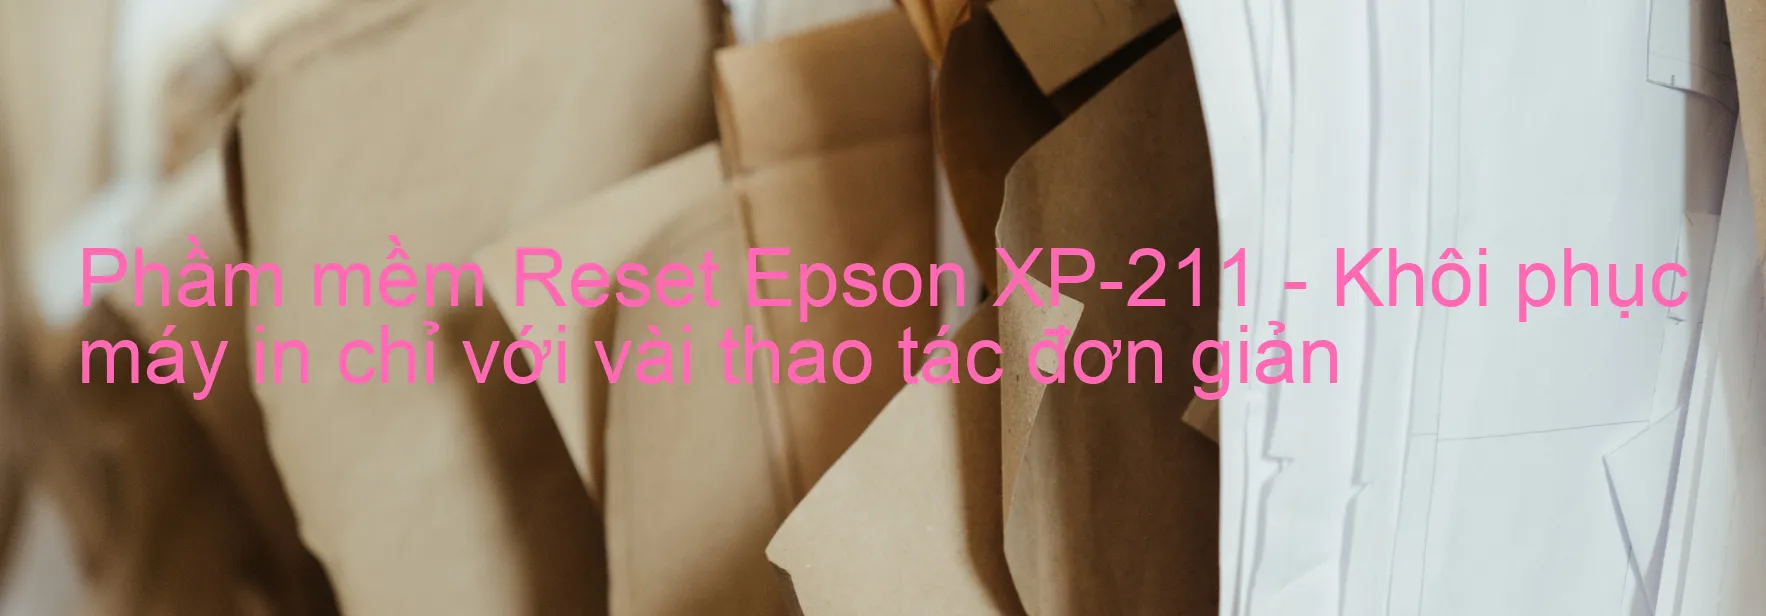 Phầm mềm Reset Epson XP-211 - Khôi phục máy in chỉ với vài thao tác đơn giản